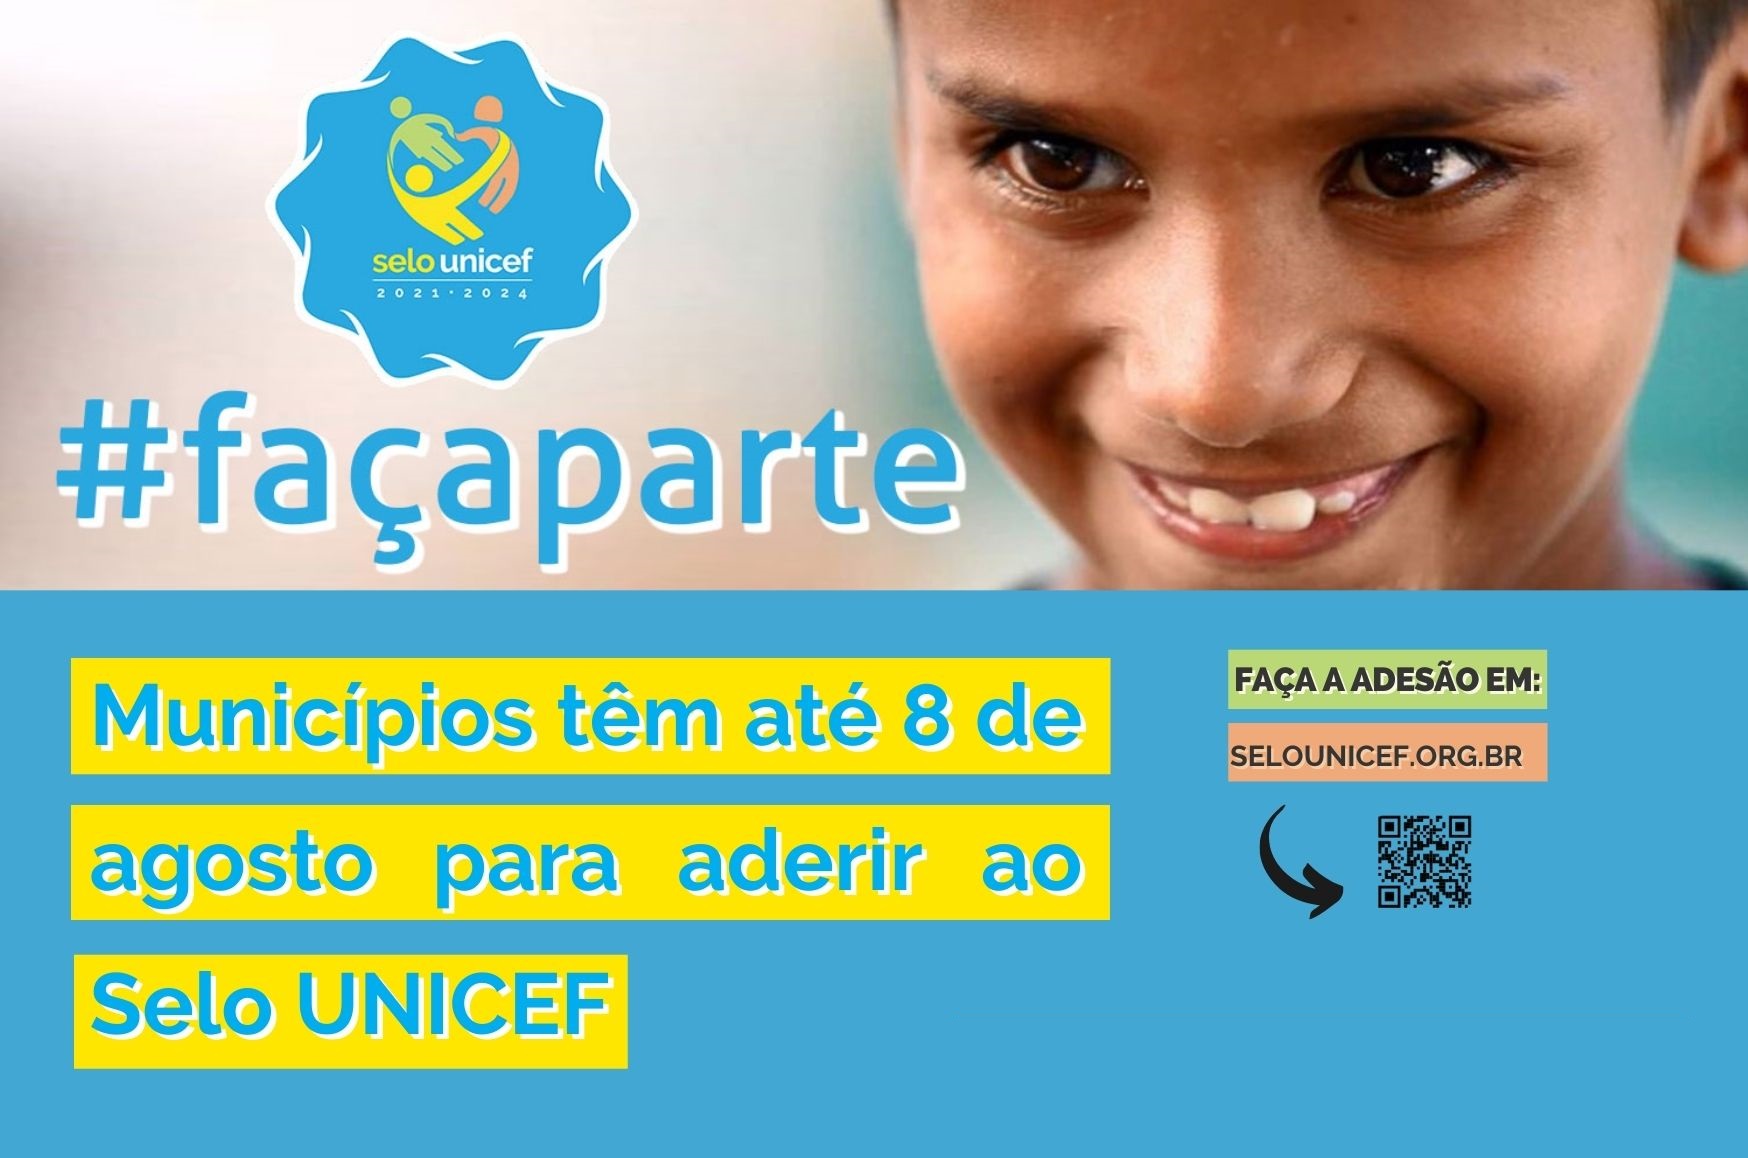 Imagem mostra garoto sorrindo, logomarca do Selo UNICEF e a hashtag #FaçaParte. Abaixo, temos o texto "Municípios têm até o dia 8 de agosto para aderir ao Selo UNICEF", seguido de "Faça a adesão em www.selounicef.org.br" 